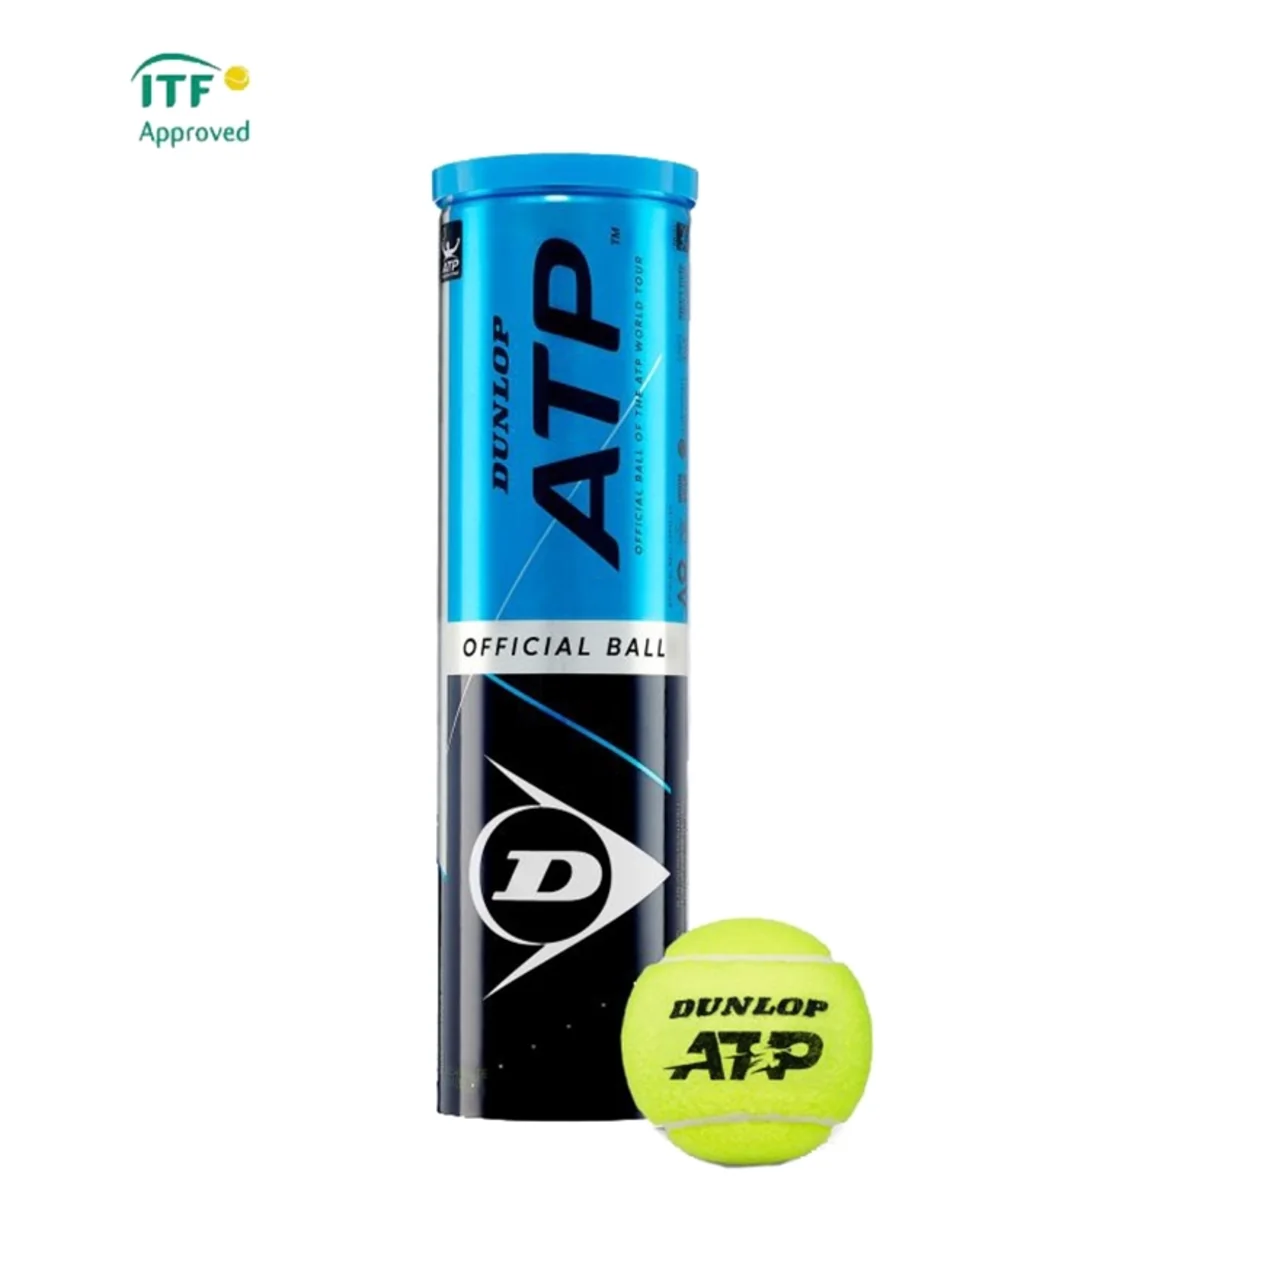 Dunlop ATP 1 tube